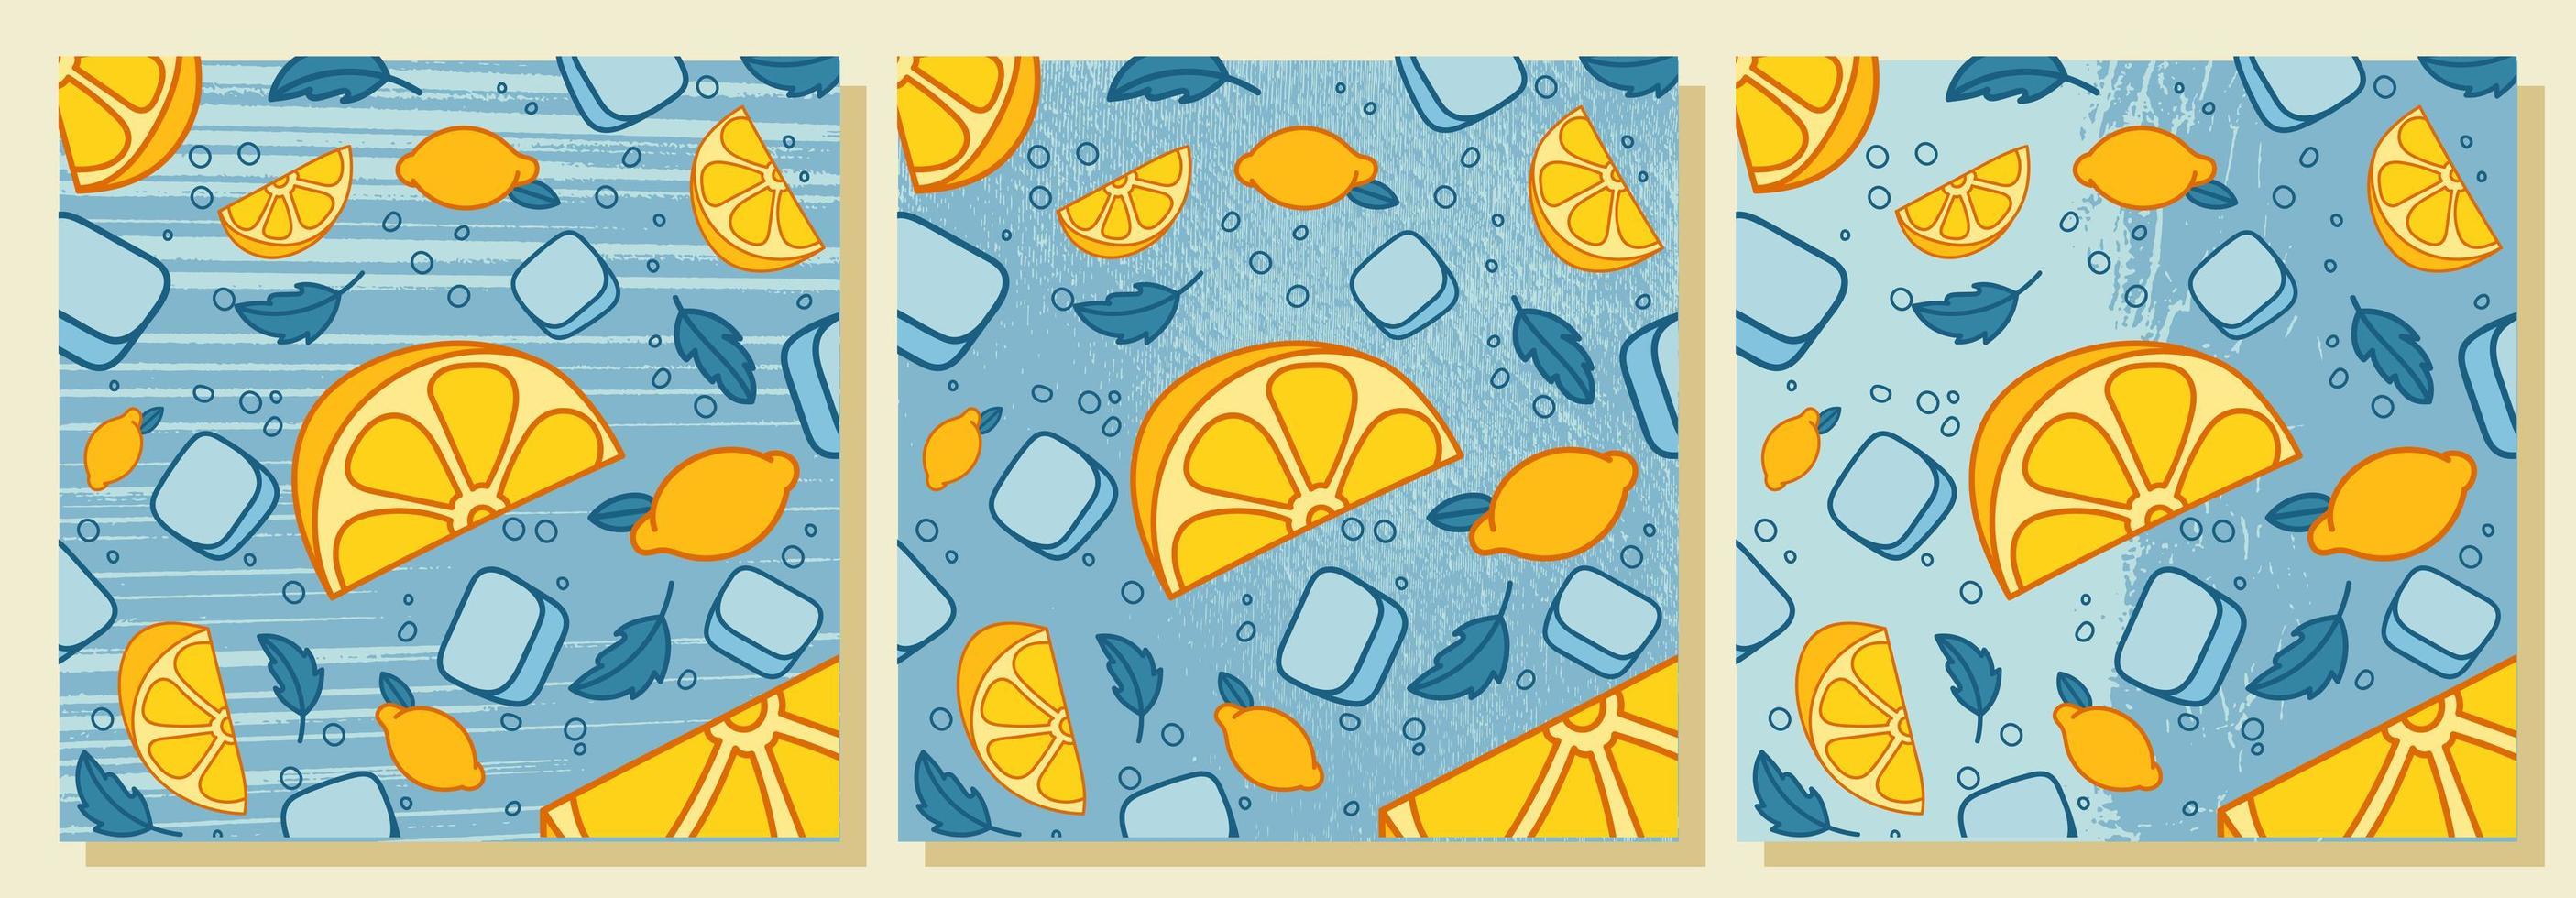 limonada fresca com hortelã e cubos de gelo. fatias de limão, folhas de hortelã. ilustração vetorial com texturas. vetor